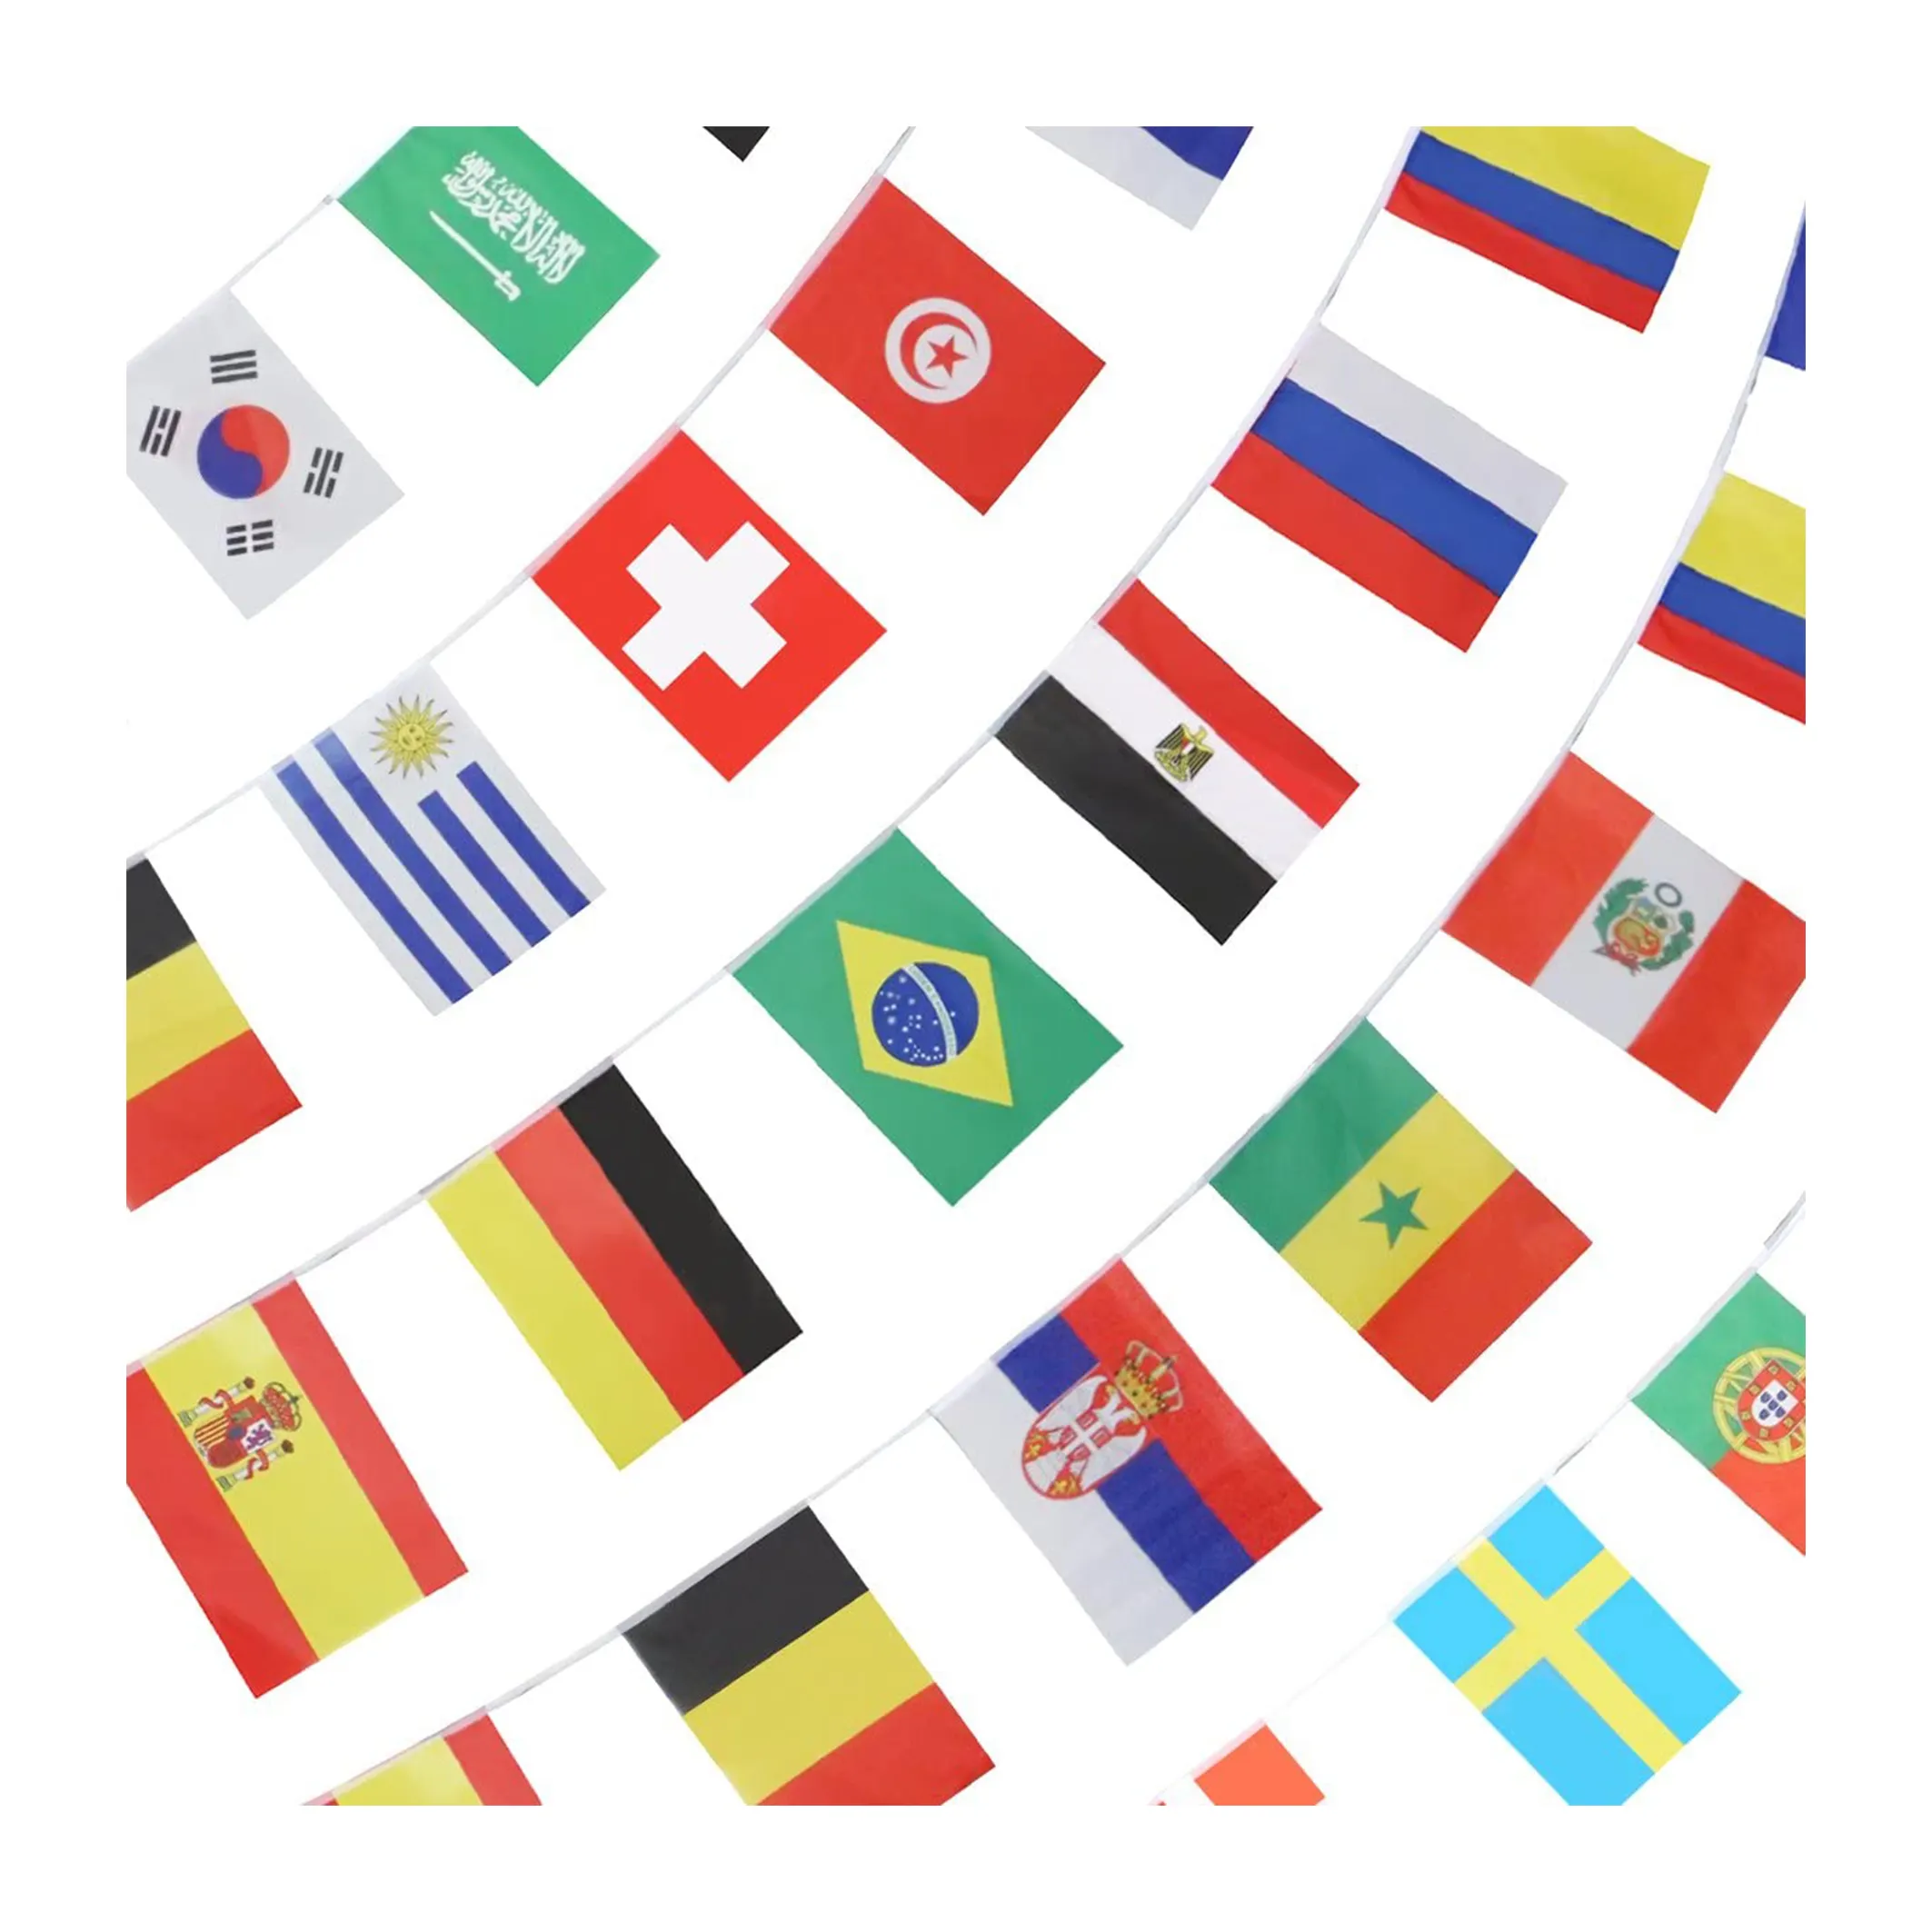 Futbol olayı ulusal kiraz kuşu afiş dünya futbol oyunları dekoratif tüm ülke dize bayrağı